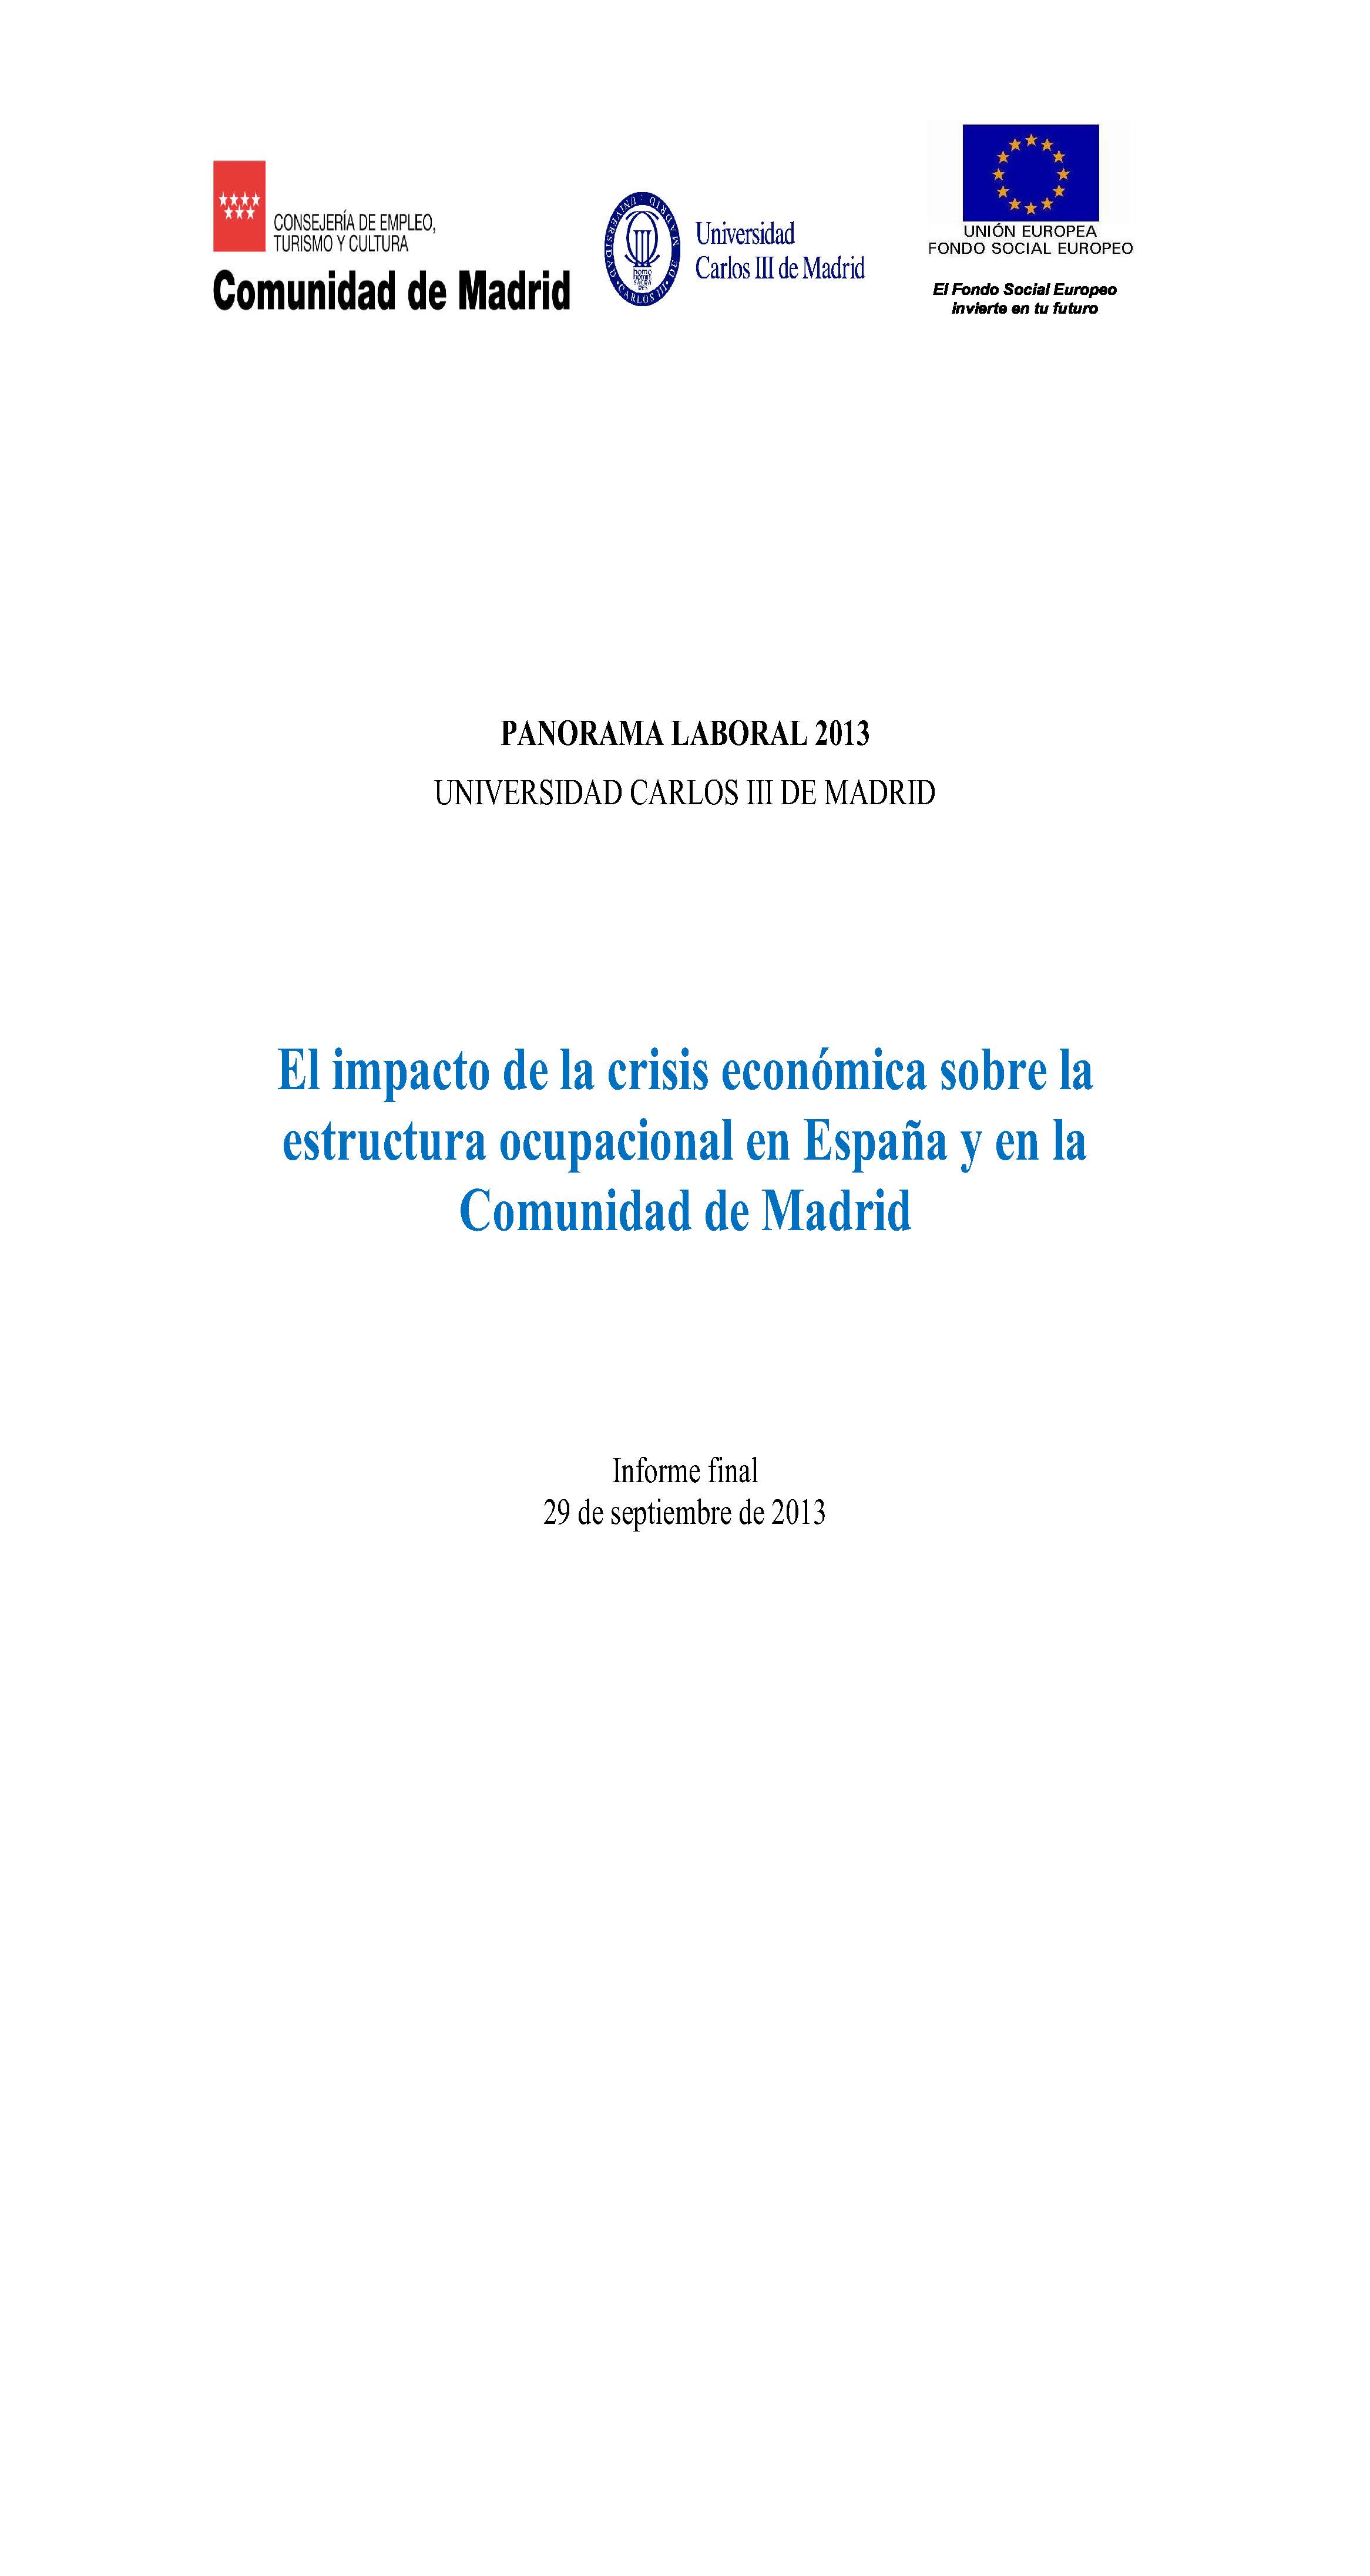 Portada de Panorama Laboral 2013 El impacto de la crisis económica sobre la estructura ocupacional en España y en la Comunidad de Madrid ventajas e inconvenientes para la recuperación económica.